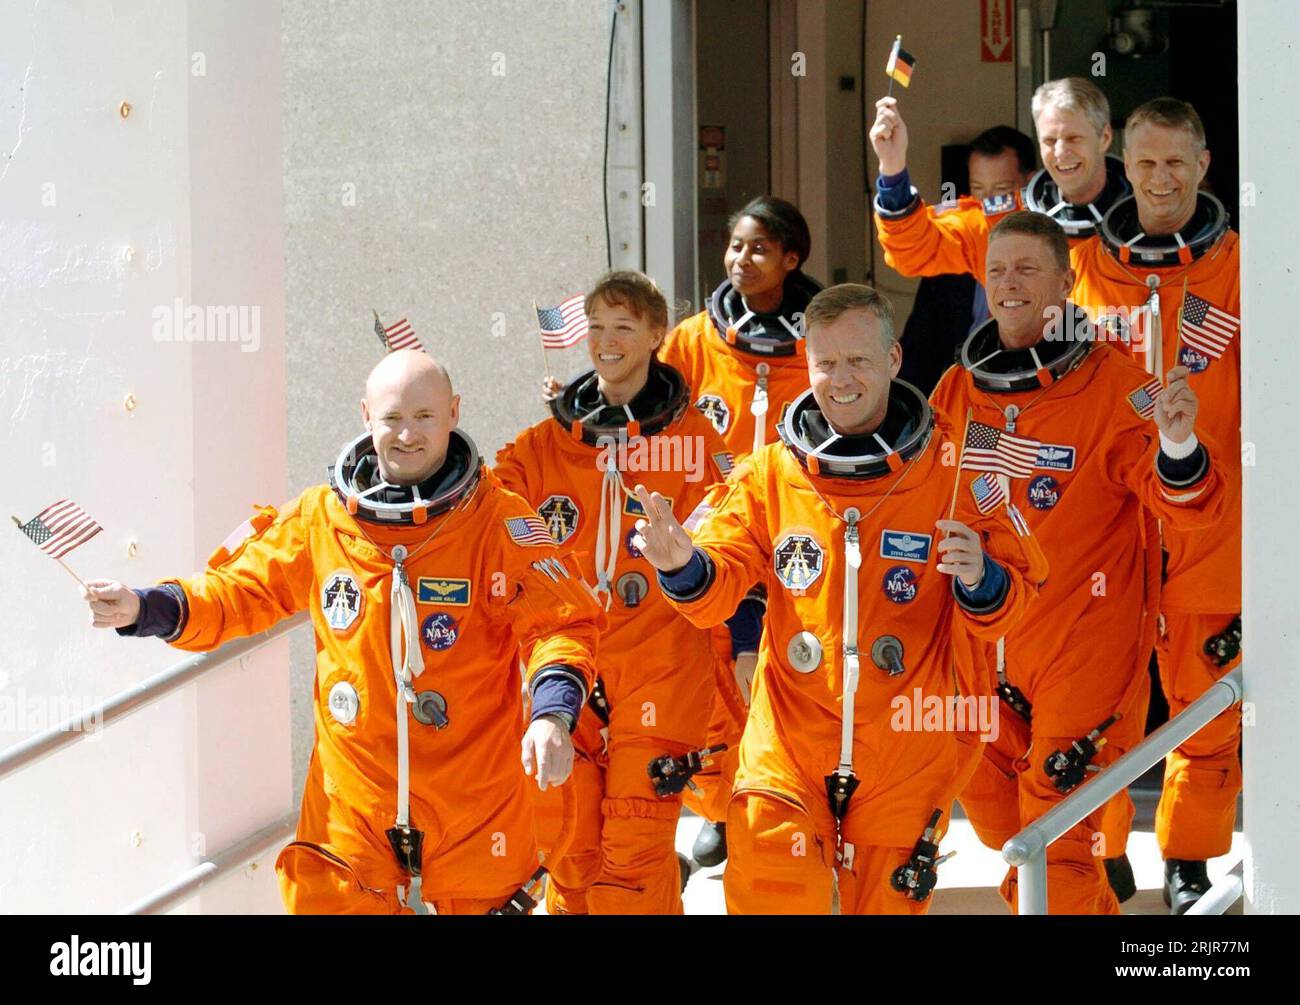 Bildnummer: 51319669  Datum: 04.07.2006  Copyright: imago/Xinhua Besatzung der Space Shuttle-Mission STS-121: Pilot Mark Kelly (vorn li.), Kommandeur Steven Lindsey (vorn re.), Missionsspezialistin Lisa Nowak (2.Reihe li.), Michael Fossum (2.Reihe re.), Stephanie Wilson (3.Reihe li.), Piers John Sellers (3.Reihe rechts/alle USA) und Bordingenieur Thomas Reiter (hinten/GER) winken mit amerikanischen Fähnchen auf dem Weg zur Discovery in Cape Canaveral in Florida - PUBLICATIONxNOTxINxCHN, Personen , optimistisch; 2006, Florida, NASA, Weltraumforschung, Raumfahrt, Astronaut, Astronauten, Besatzun Stock Photo